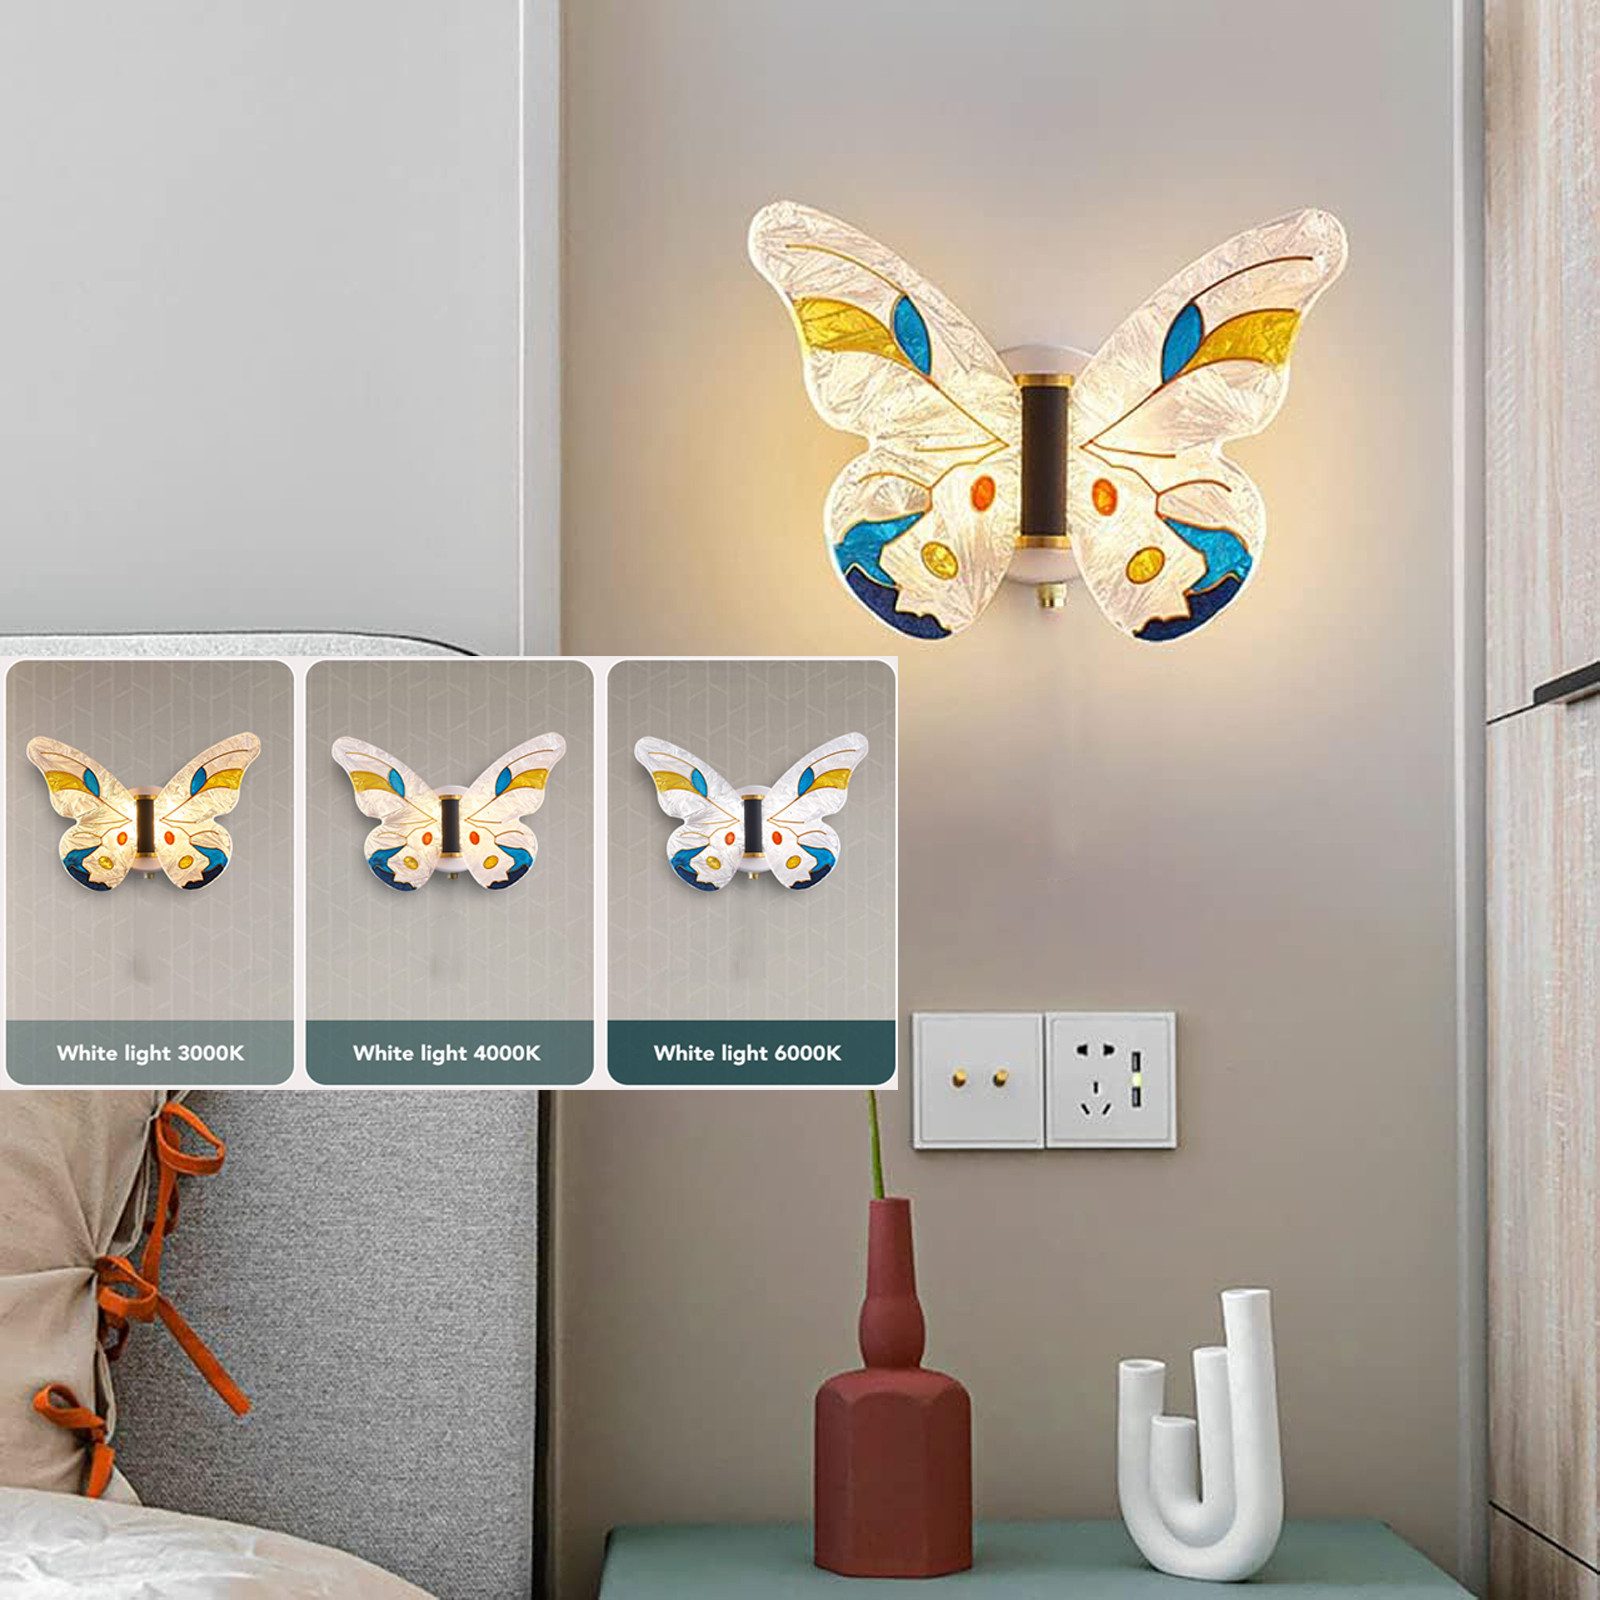 Jibenhome LED Wandleuchte LED-Wandleuchten Dimmbar 3 Farbtem Schmetterlings Wandlampe 8W, Ohne Zugschalter, LED fest integriert, Acryl Wandlampe für Schlafzimmer,Kinderzimmer,Treppen,Flur